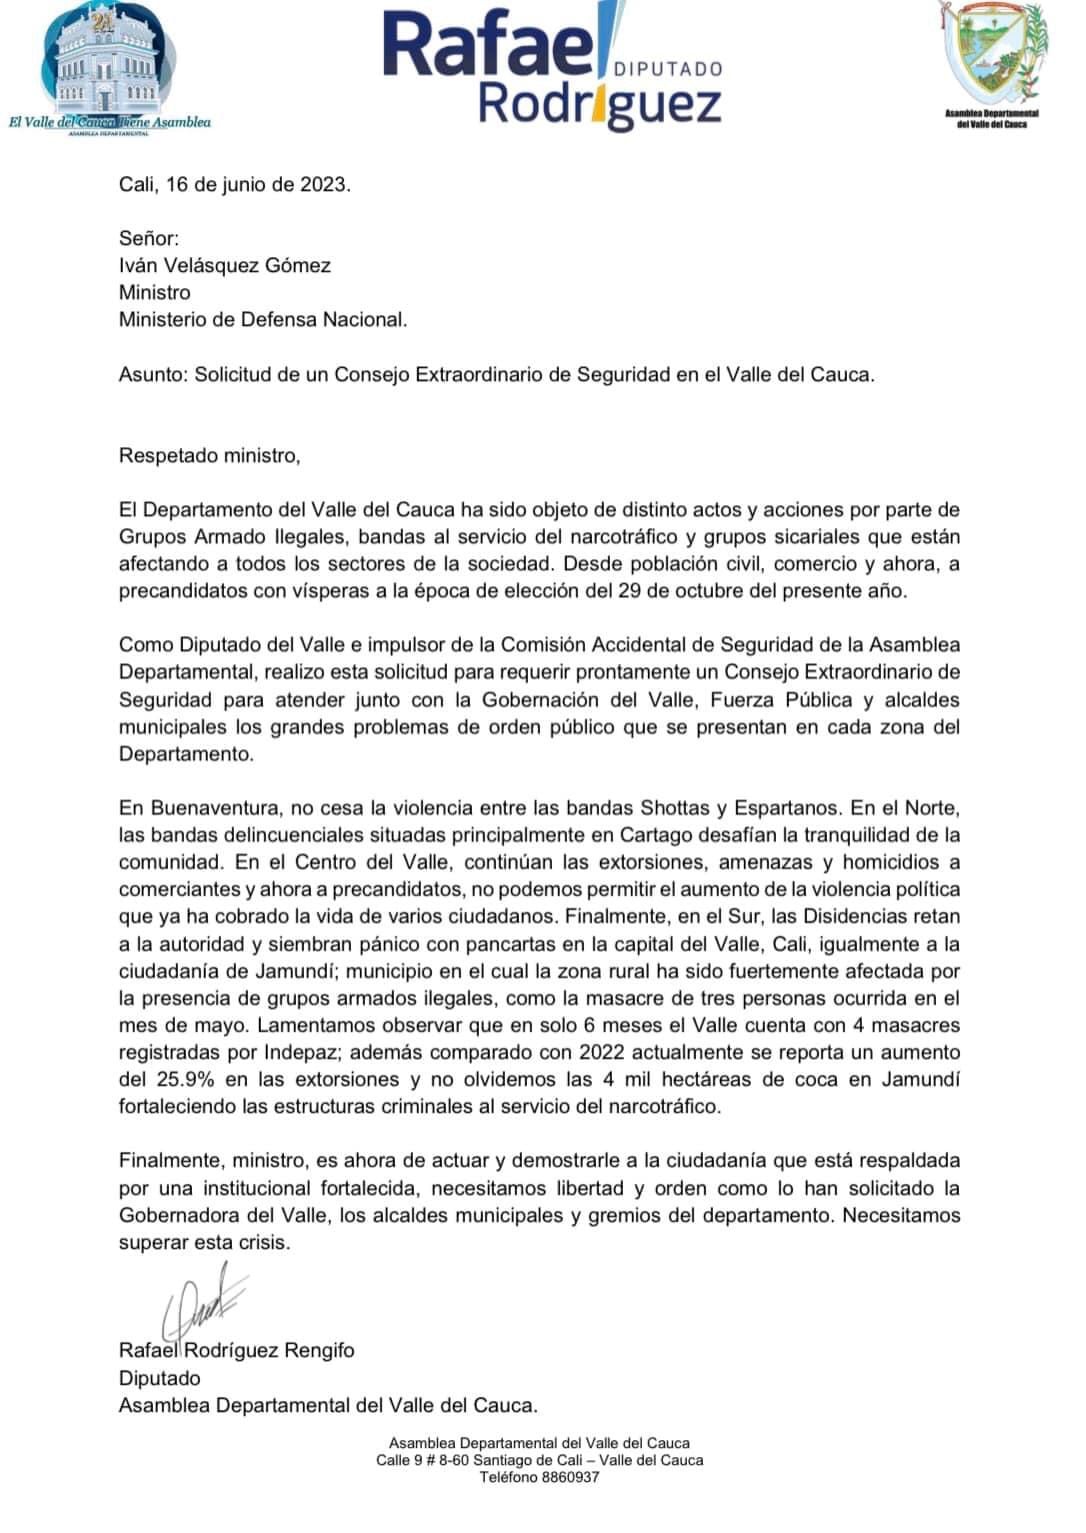 Carta del diputado Rafael Rodríguez al ministro de Defensa, Iván Velásquez, referente a la violencia e inseguridad que se está viviendo en el departamento del Valle.